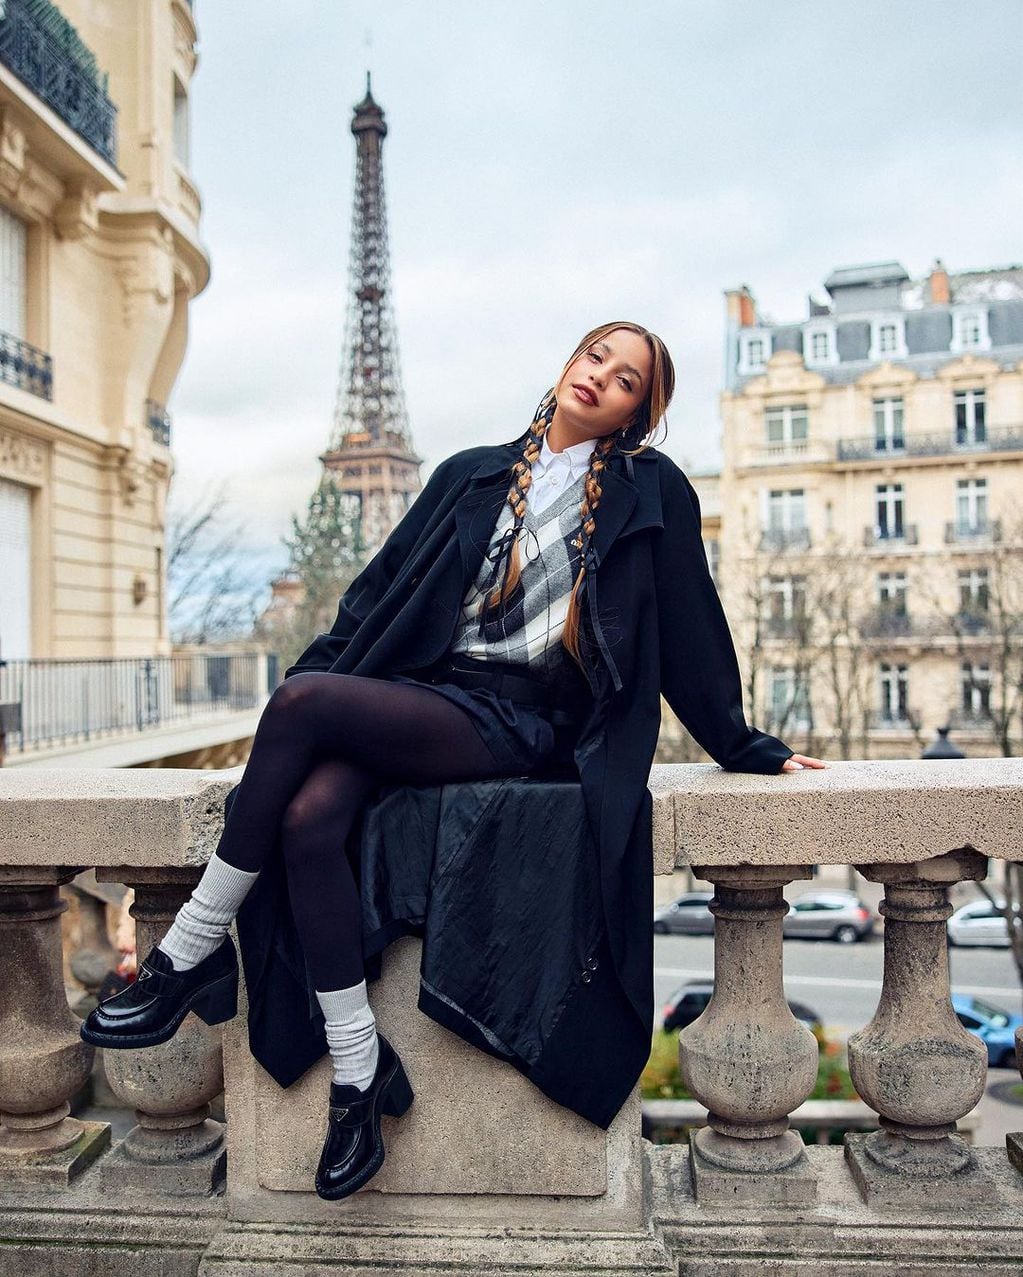 Desde París, Emilia Mernes lució un sueter tejido con rombos y marcó tendencia